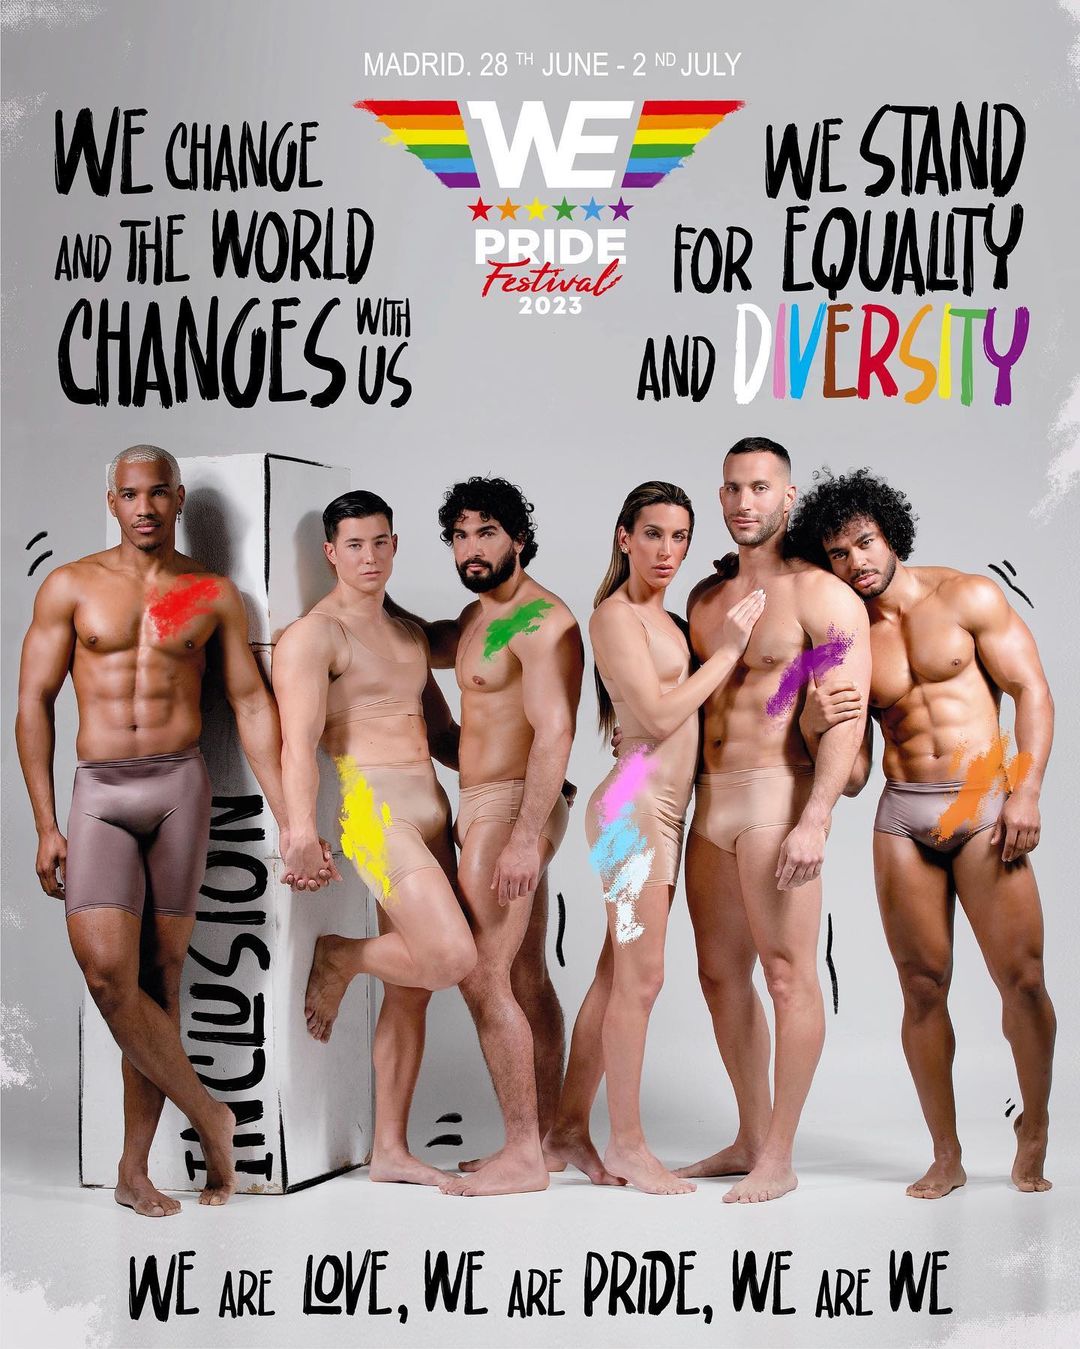 www.znewsservice.com lack of diversity sparks criticism for chiselled models on pride festival poster jam press jmp317880